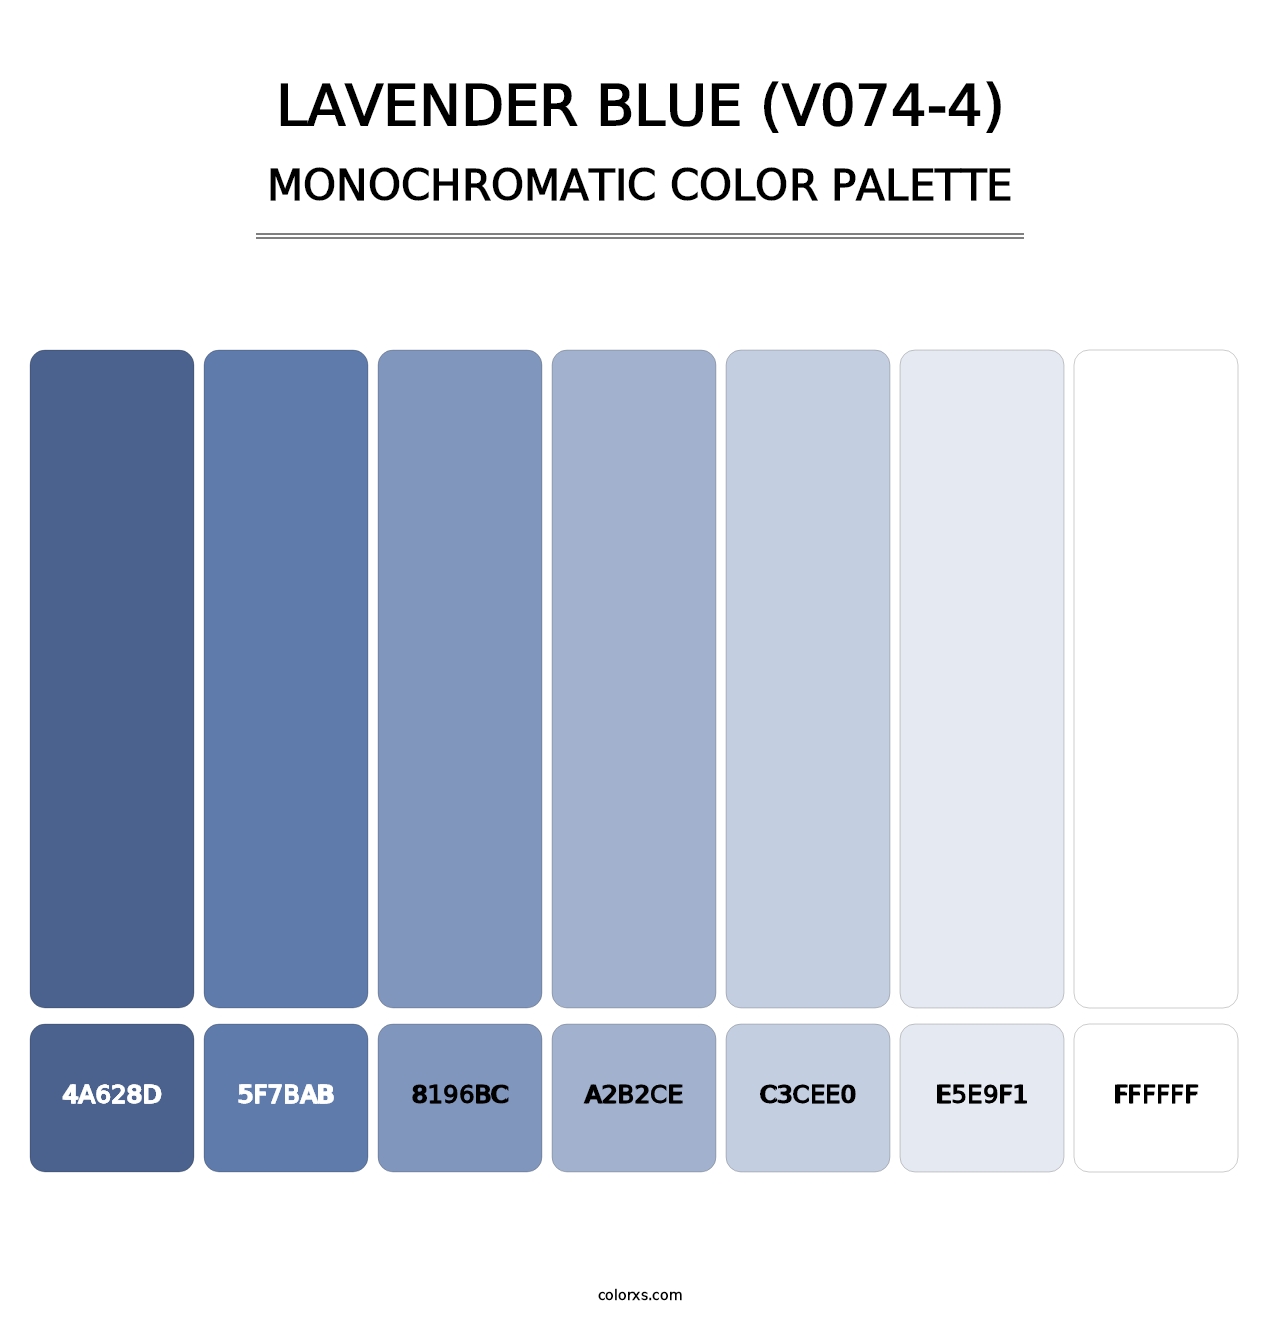 Lavender Blue (V074-4) - Monochromatic Color Palette